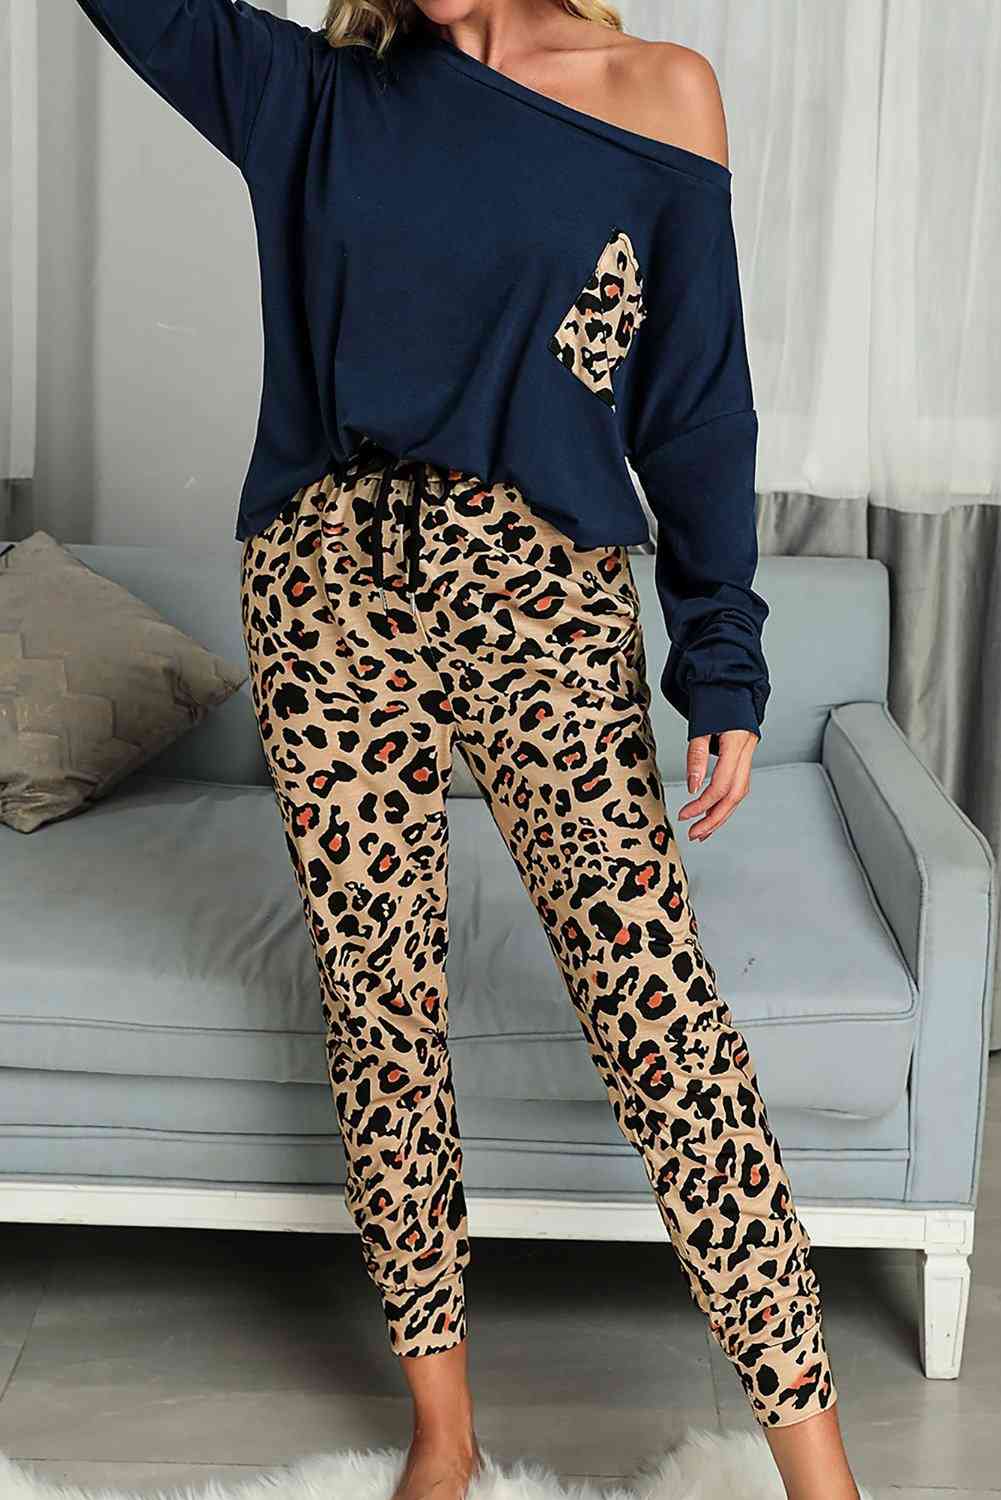 Casual Blue Long Sleeve Top, Leopard Pants - Loungewear Set